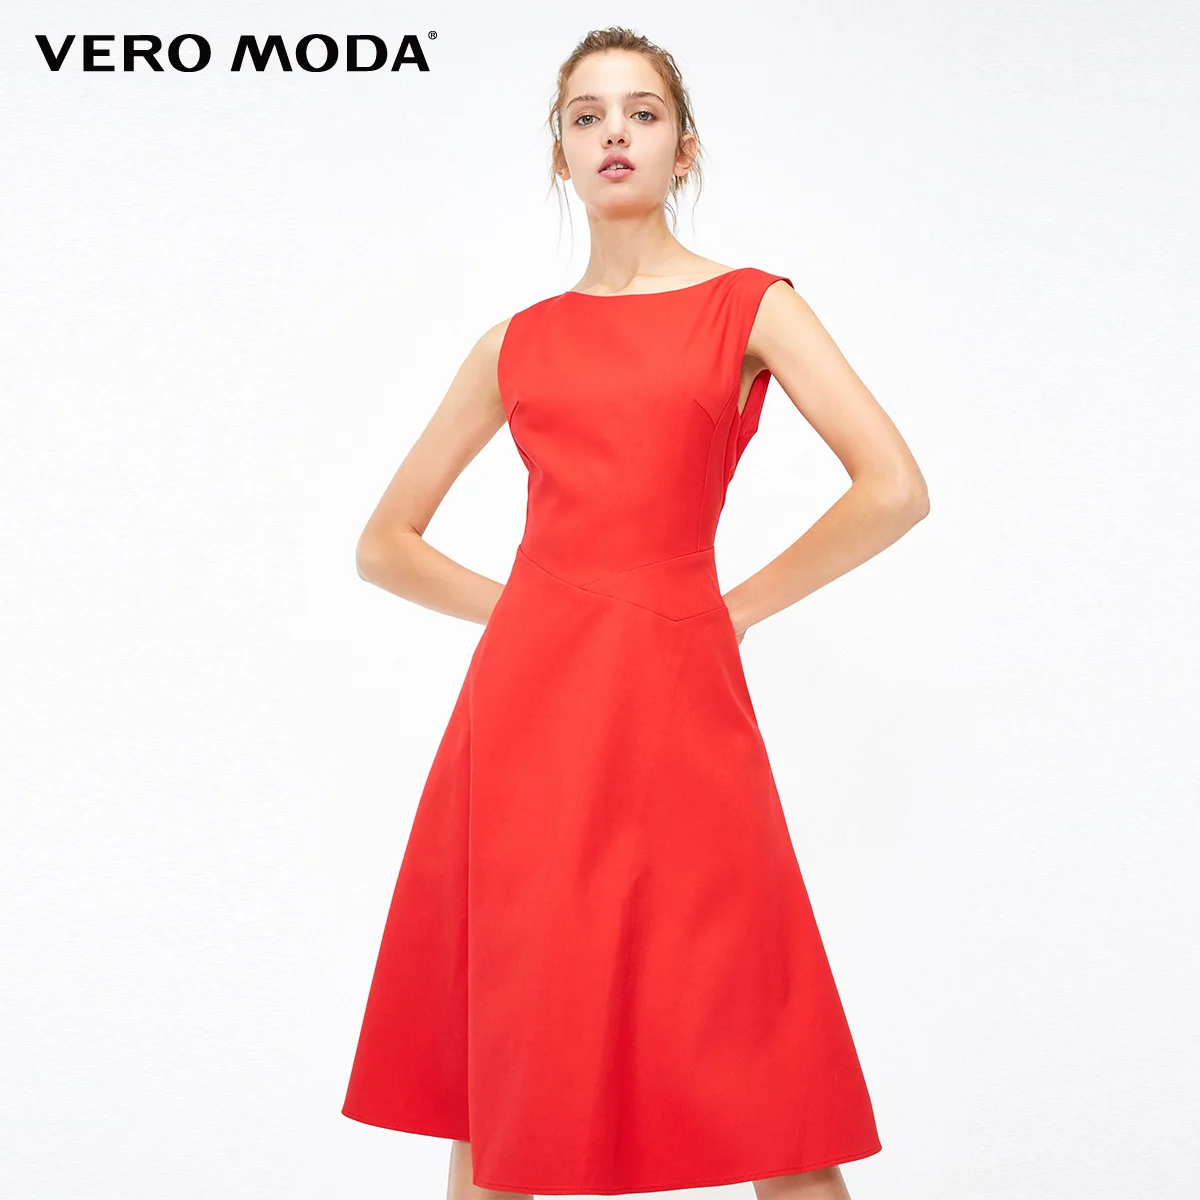 Vero Moda платье женское приталенные вечерние платья трапециевидной формы в минималистическом стиле | 31837A519 - Цвет: Red tomato